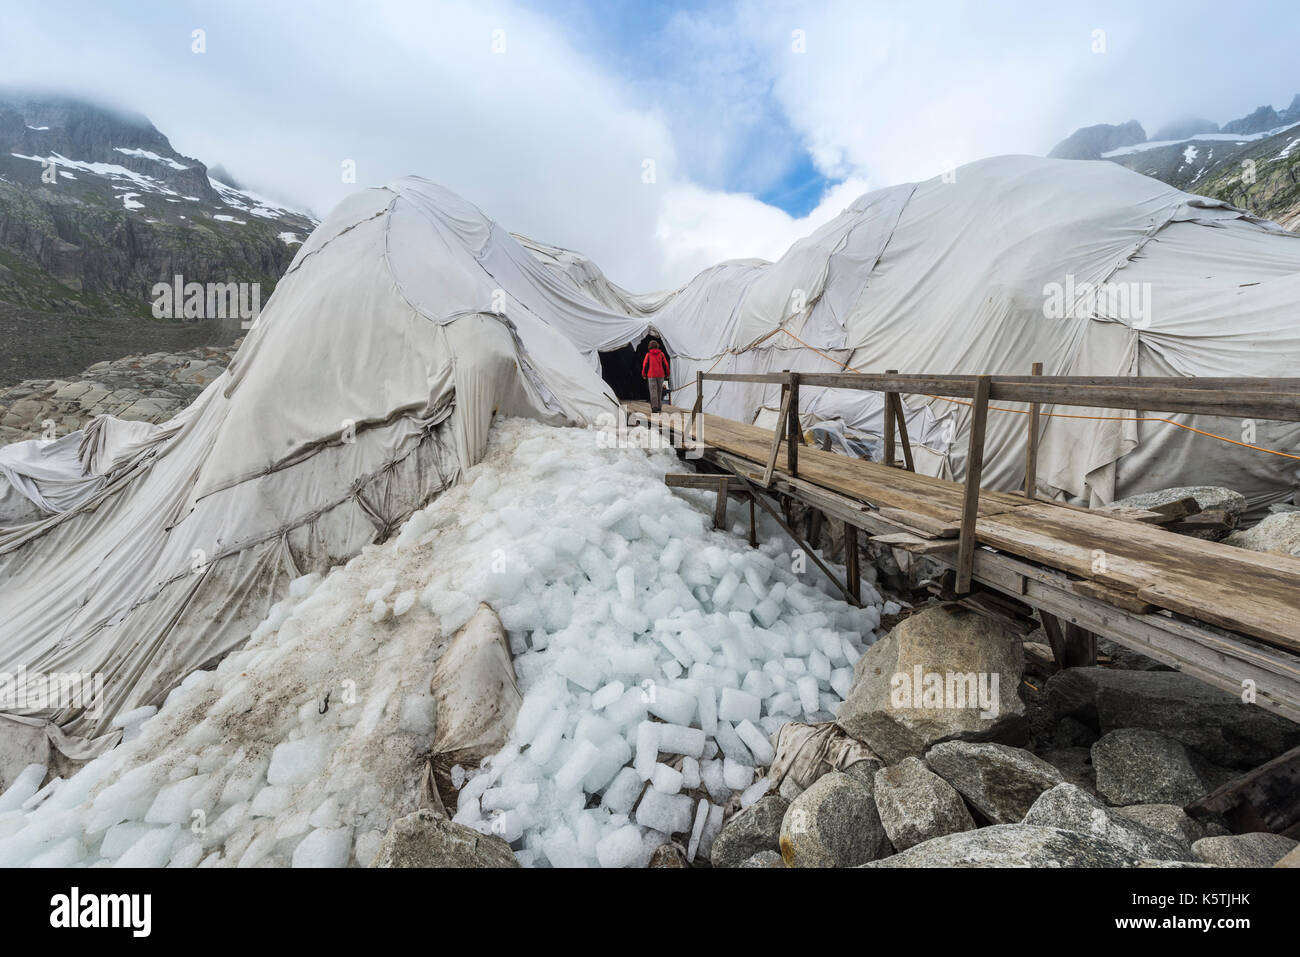 Ingresso del tunnel di ghiaccio del ghiacciaio del Rodano, coperto con panni bianchi contro la fusione, obergoms, Vallese, Svizzera Foto Stock